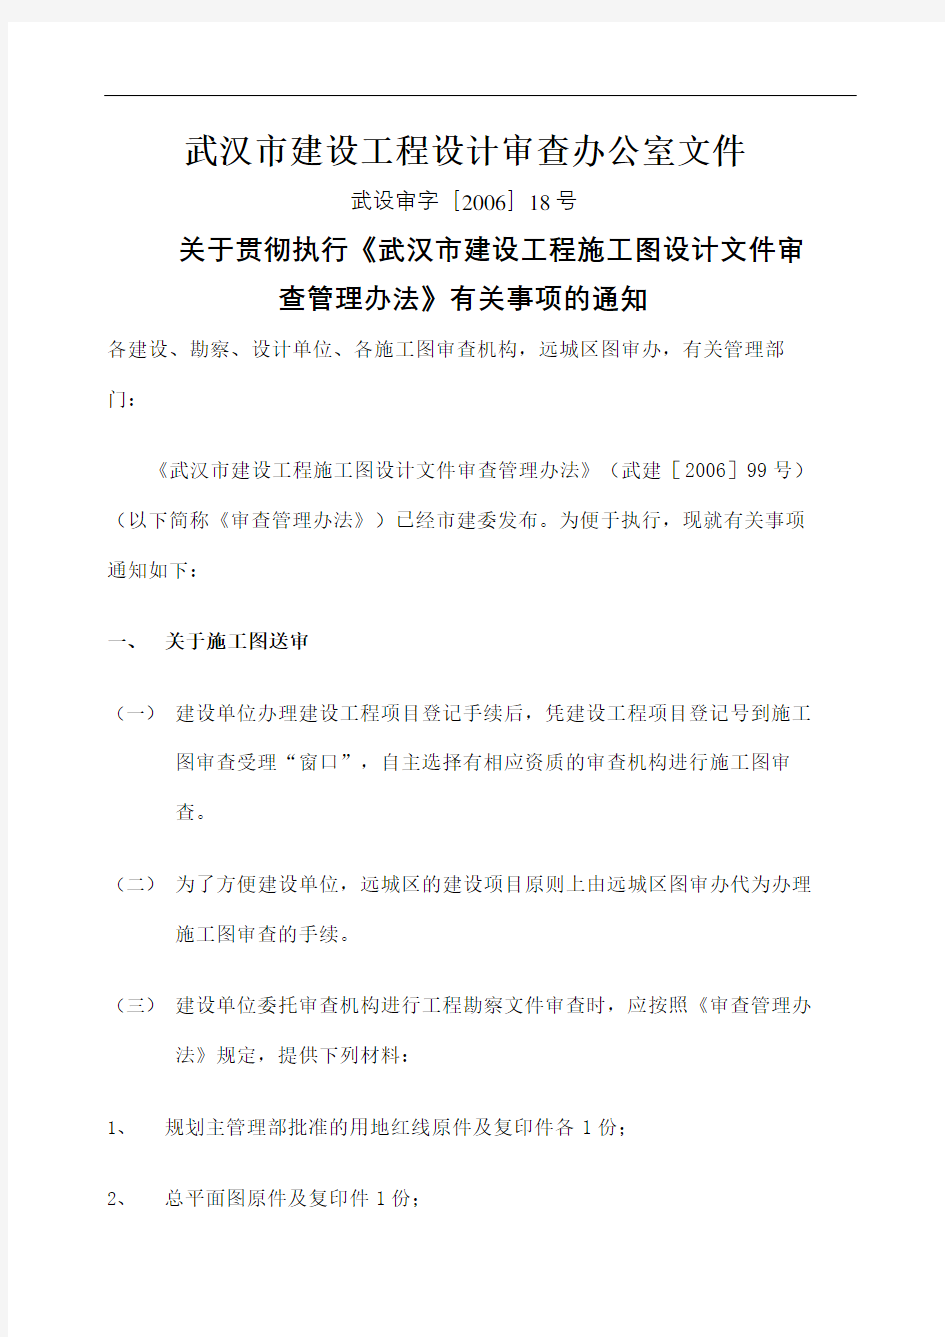 武汉市建施工图设计文件审查管理规定事项的通知